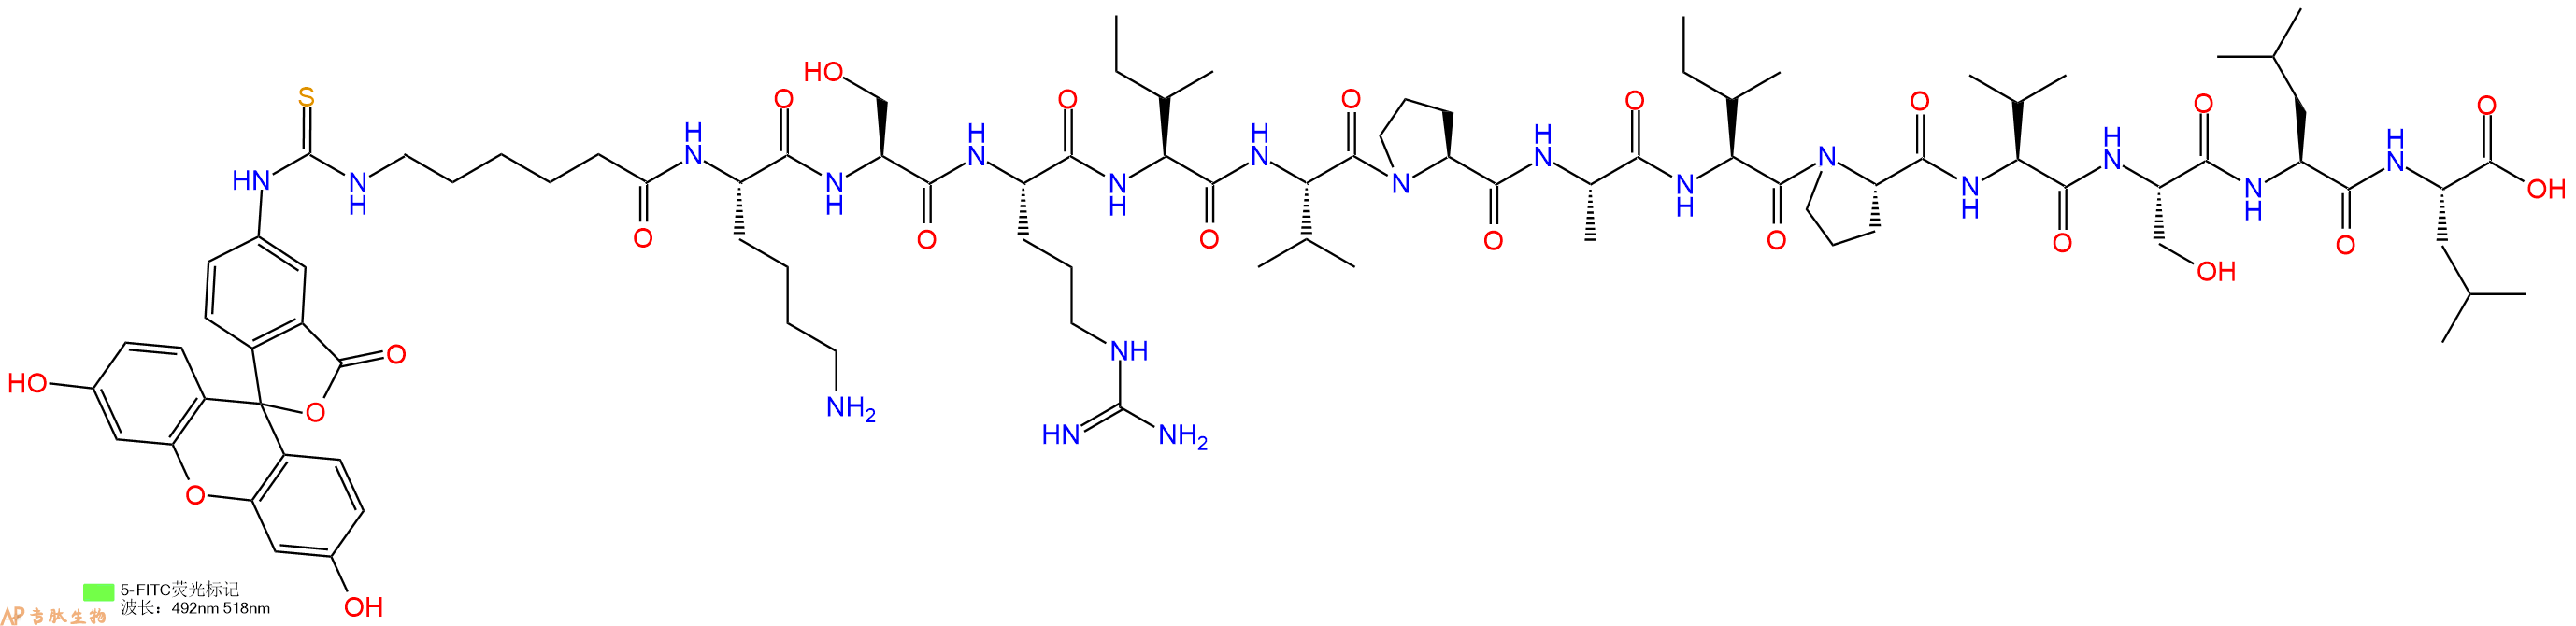 专肽生物产品5FITC-Ahx-Lys-Ser-Arg-Ile-Val-Pro-Ala-Ile-Pro-Val-